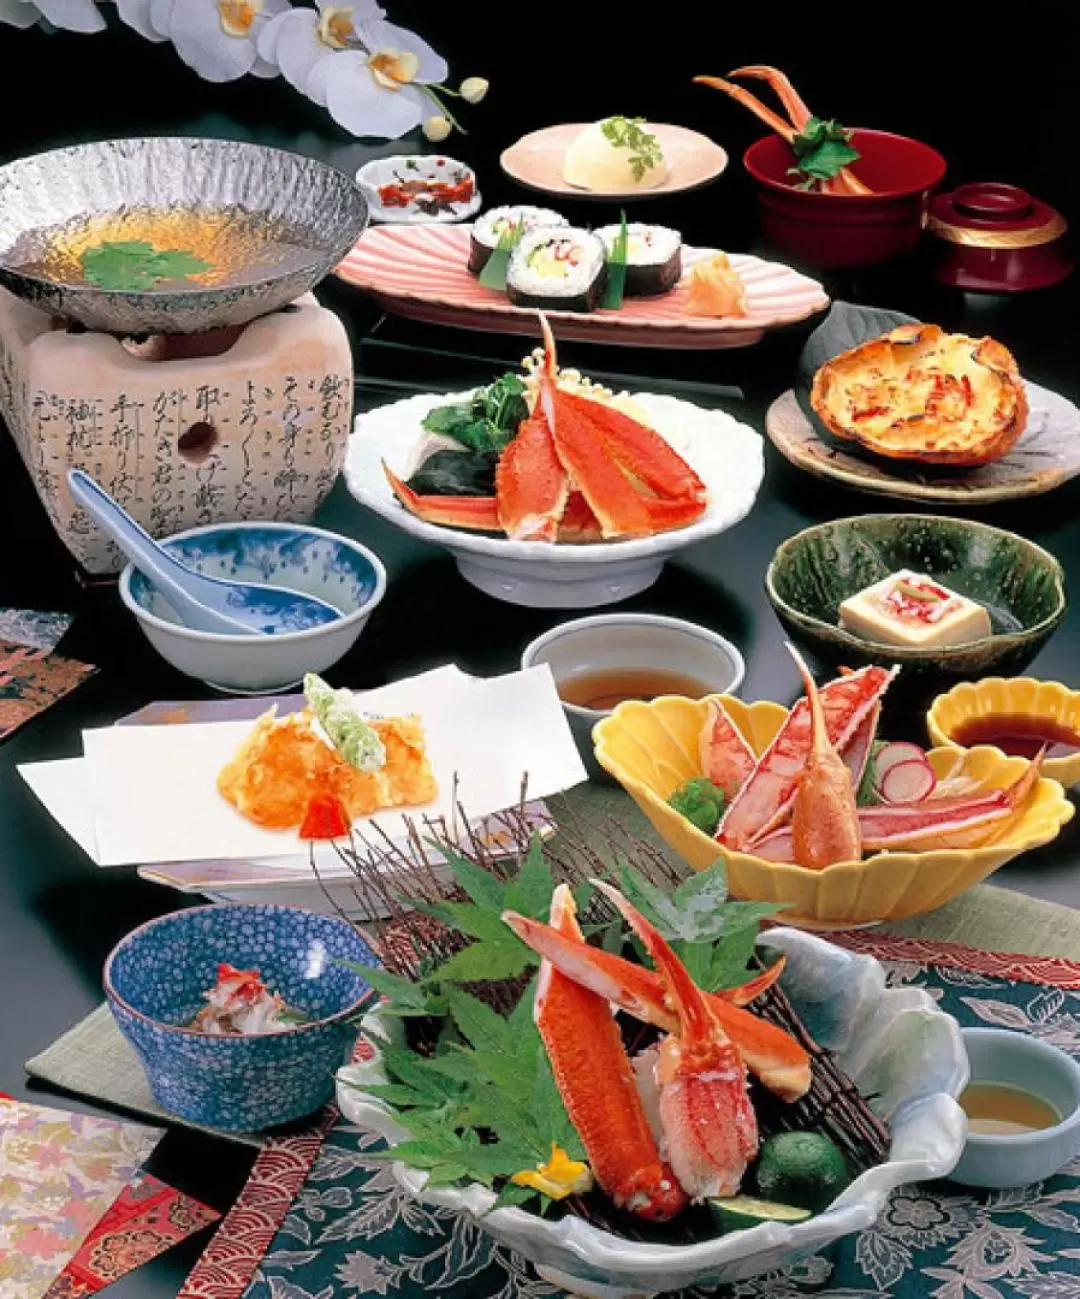 Sopporo Kaniya - Crab Specialty in Kyoto